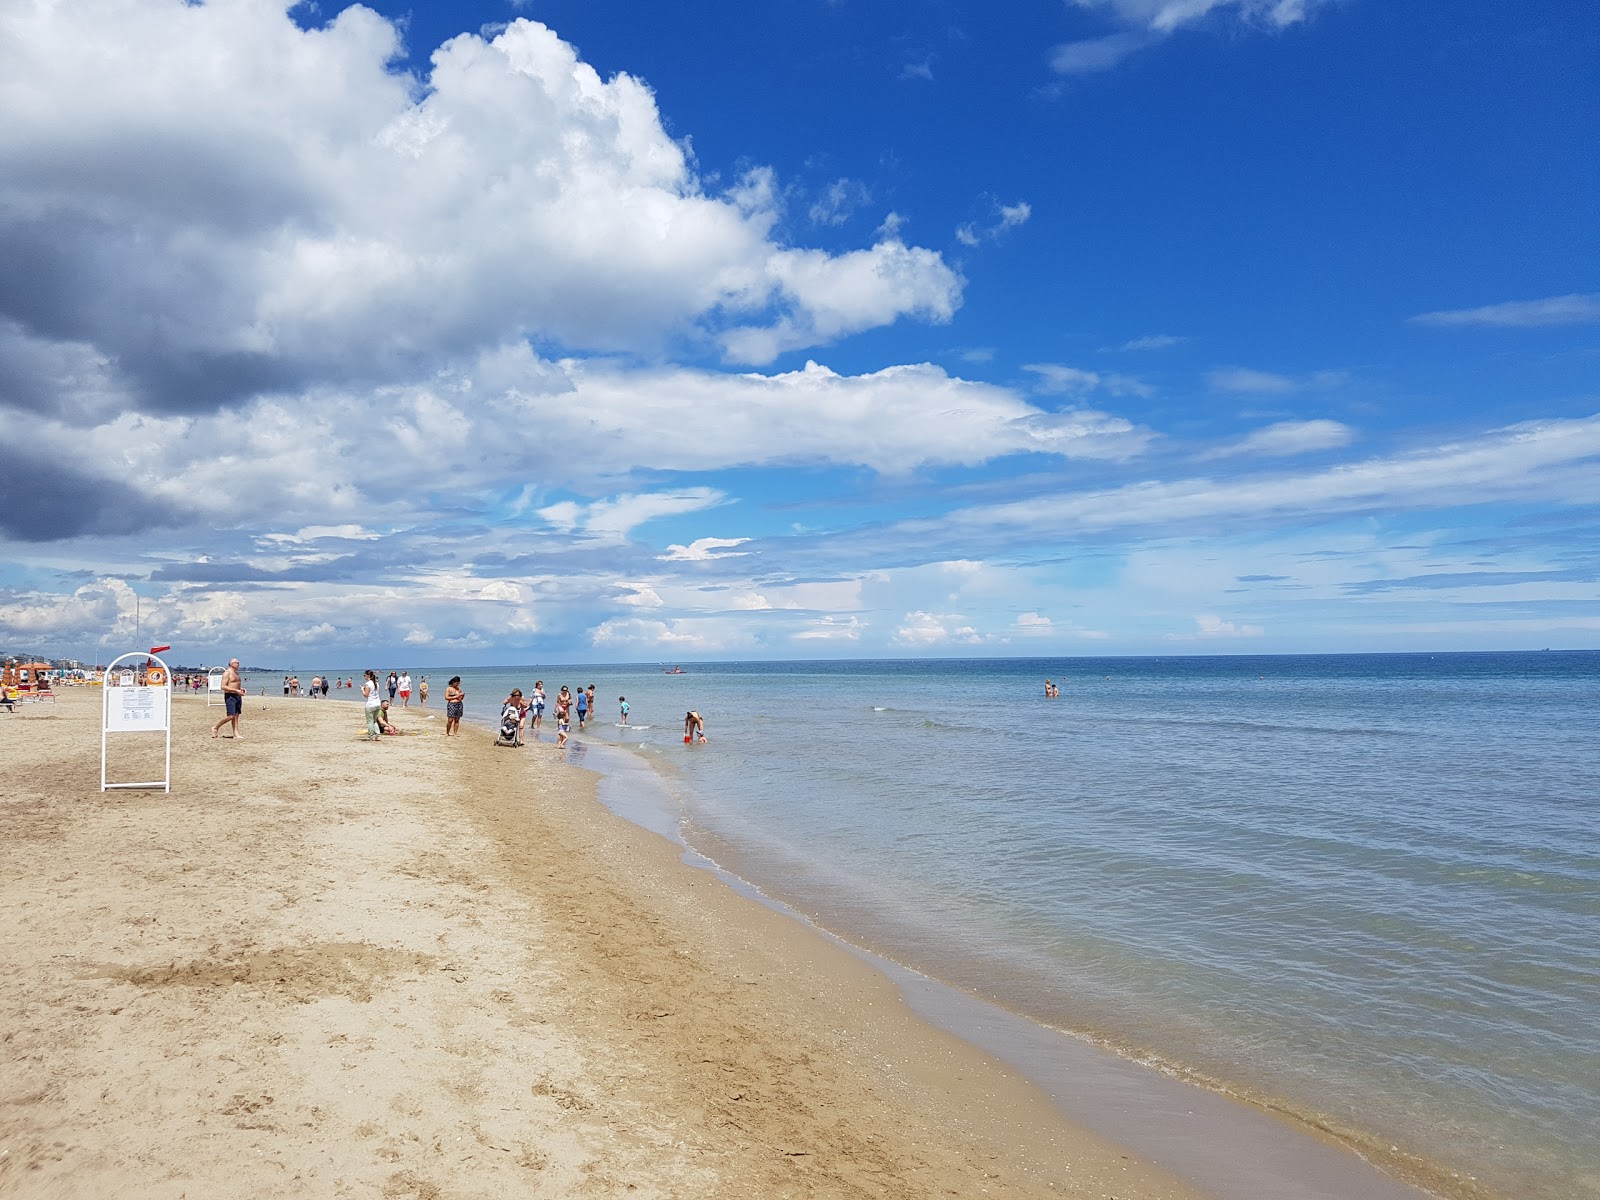 Riccione beach'in fotoğrafı parlak ince kum yüzey ile